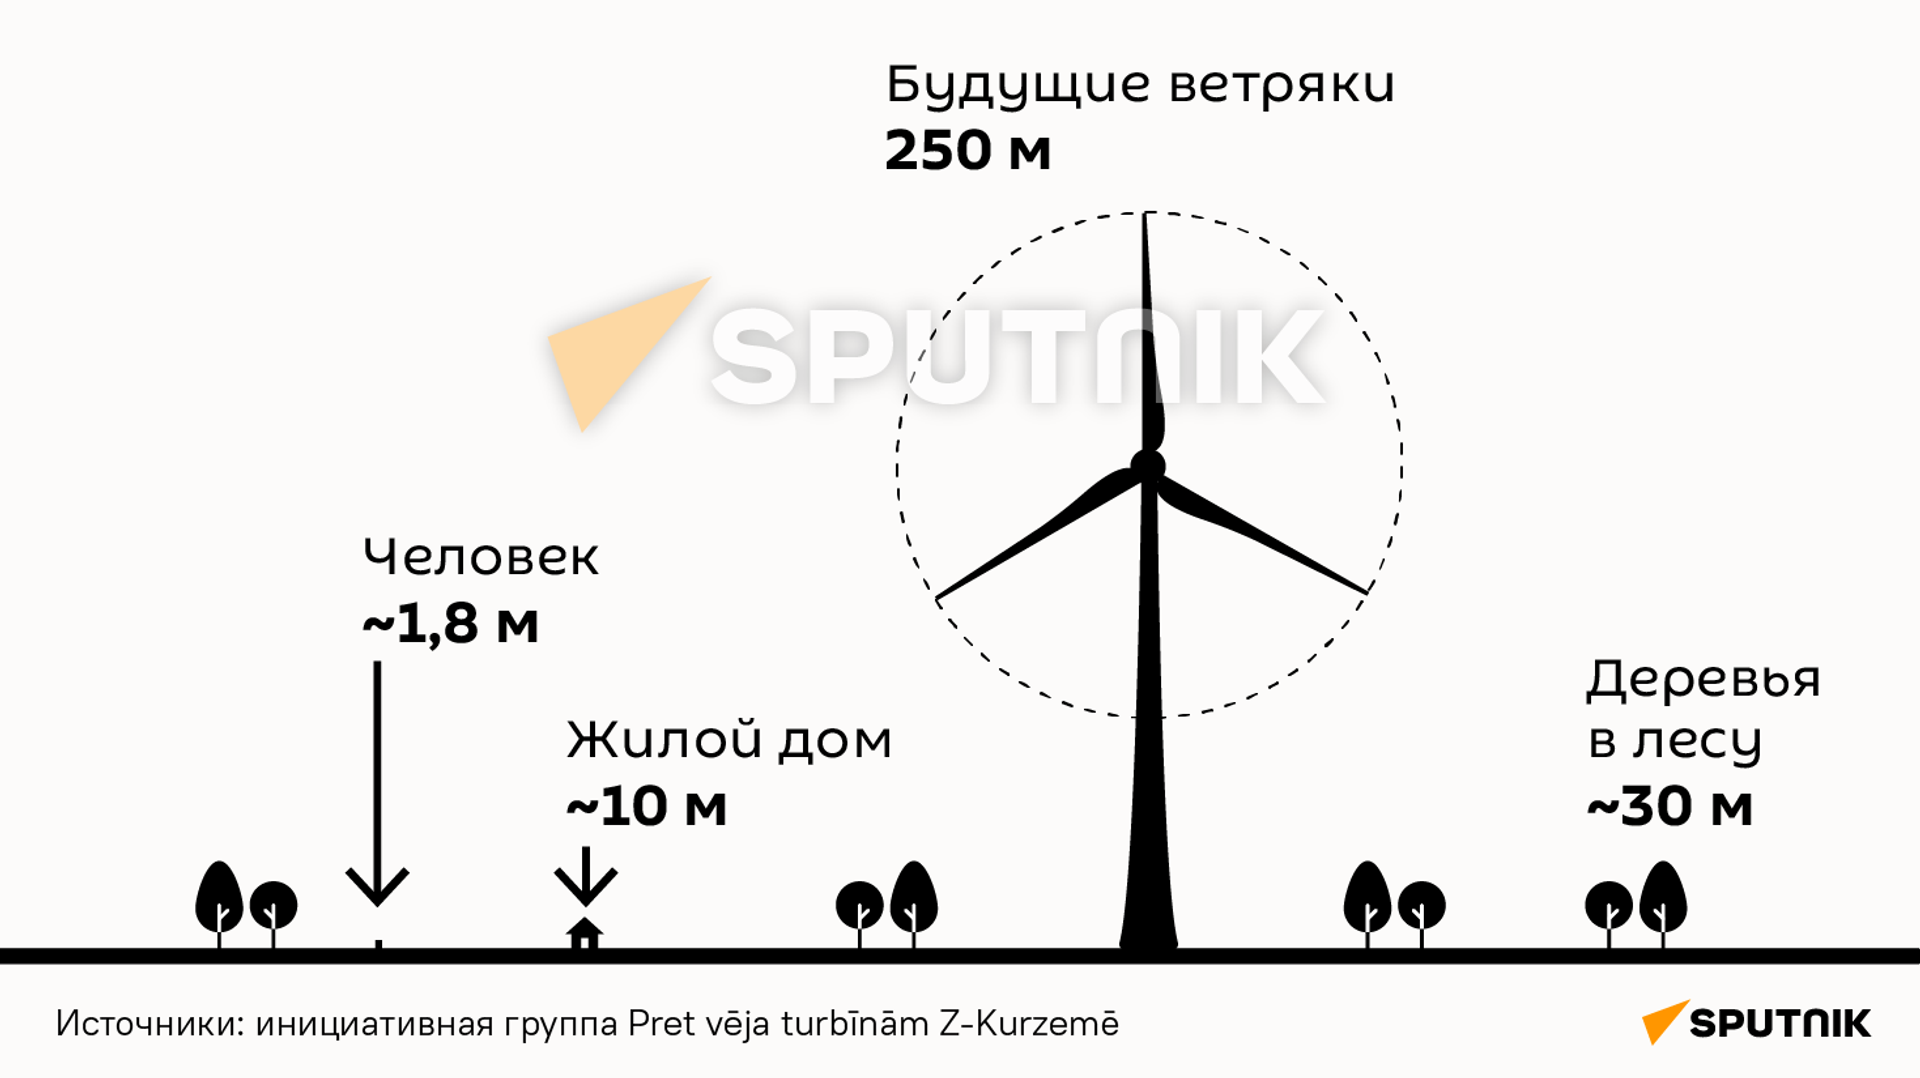 Высота будущих ветряков в Курземе в сравнении - Sputnik Latvija, 1920, 02.07.2021